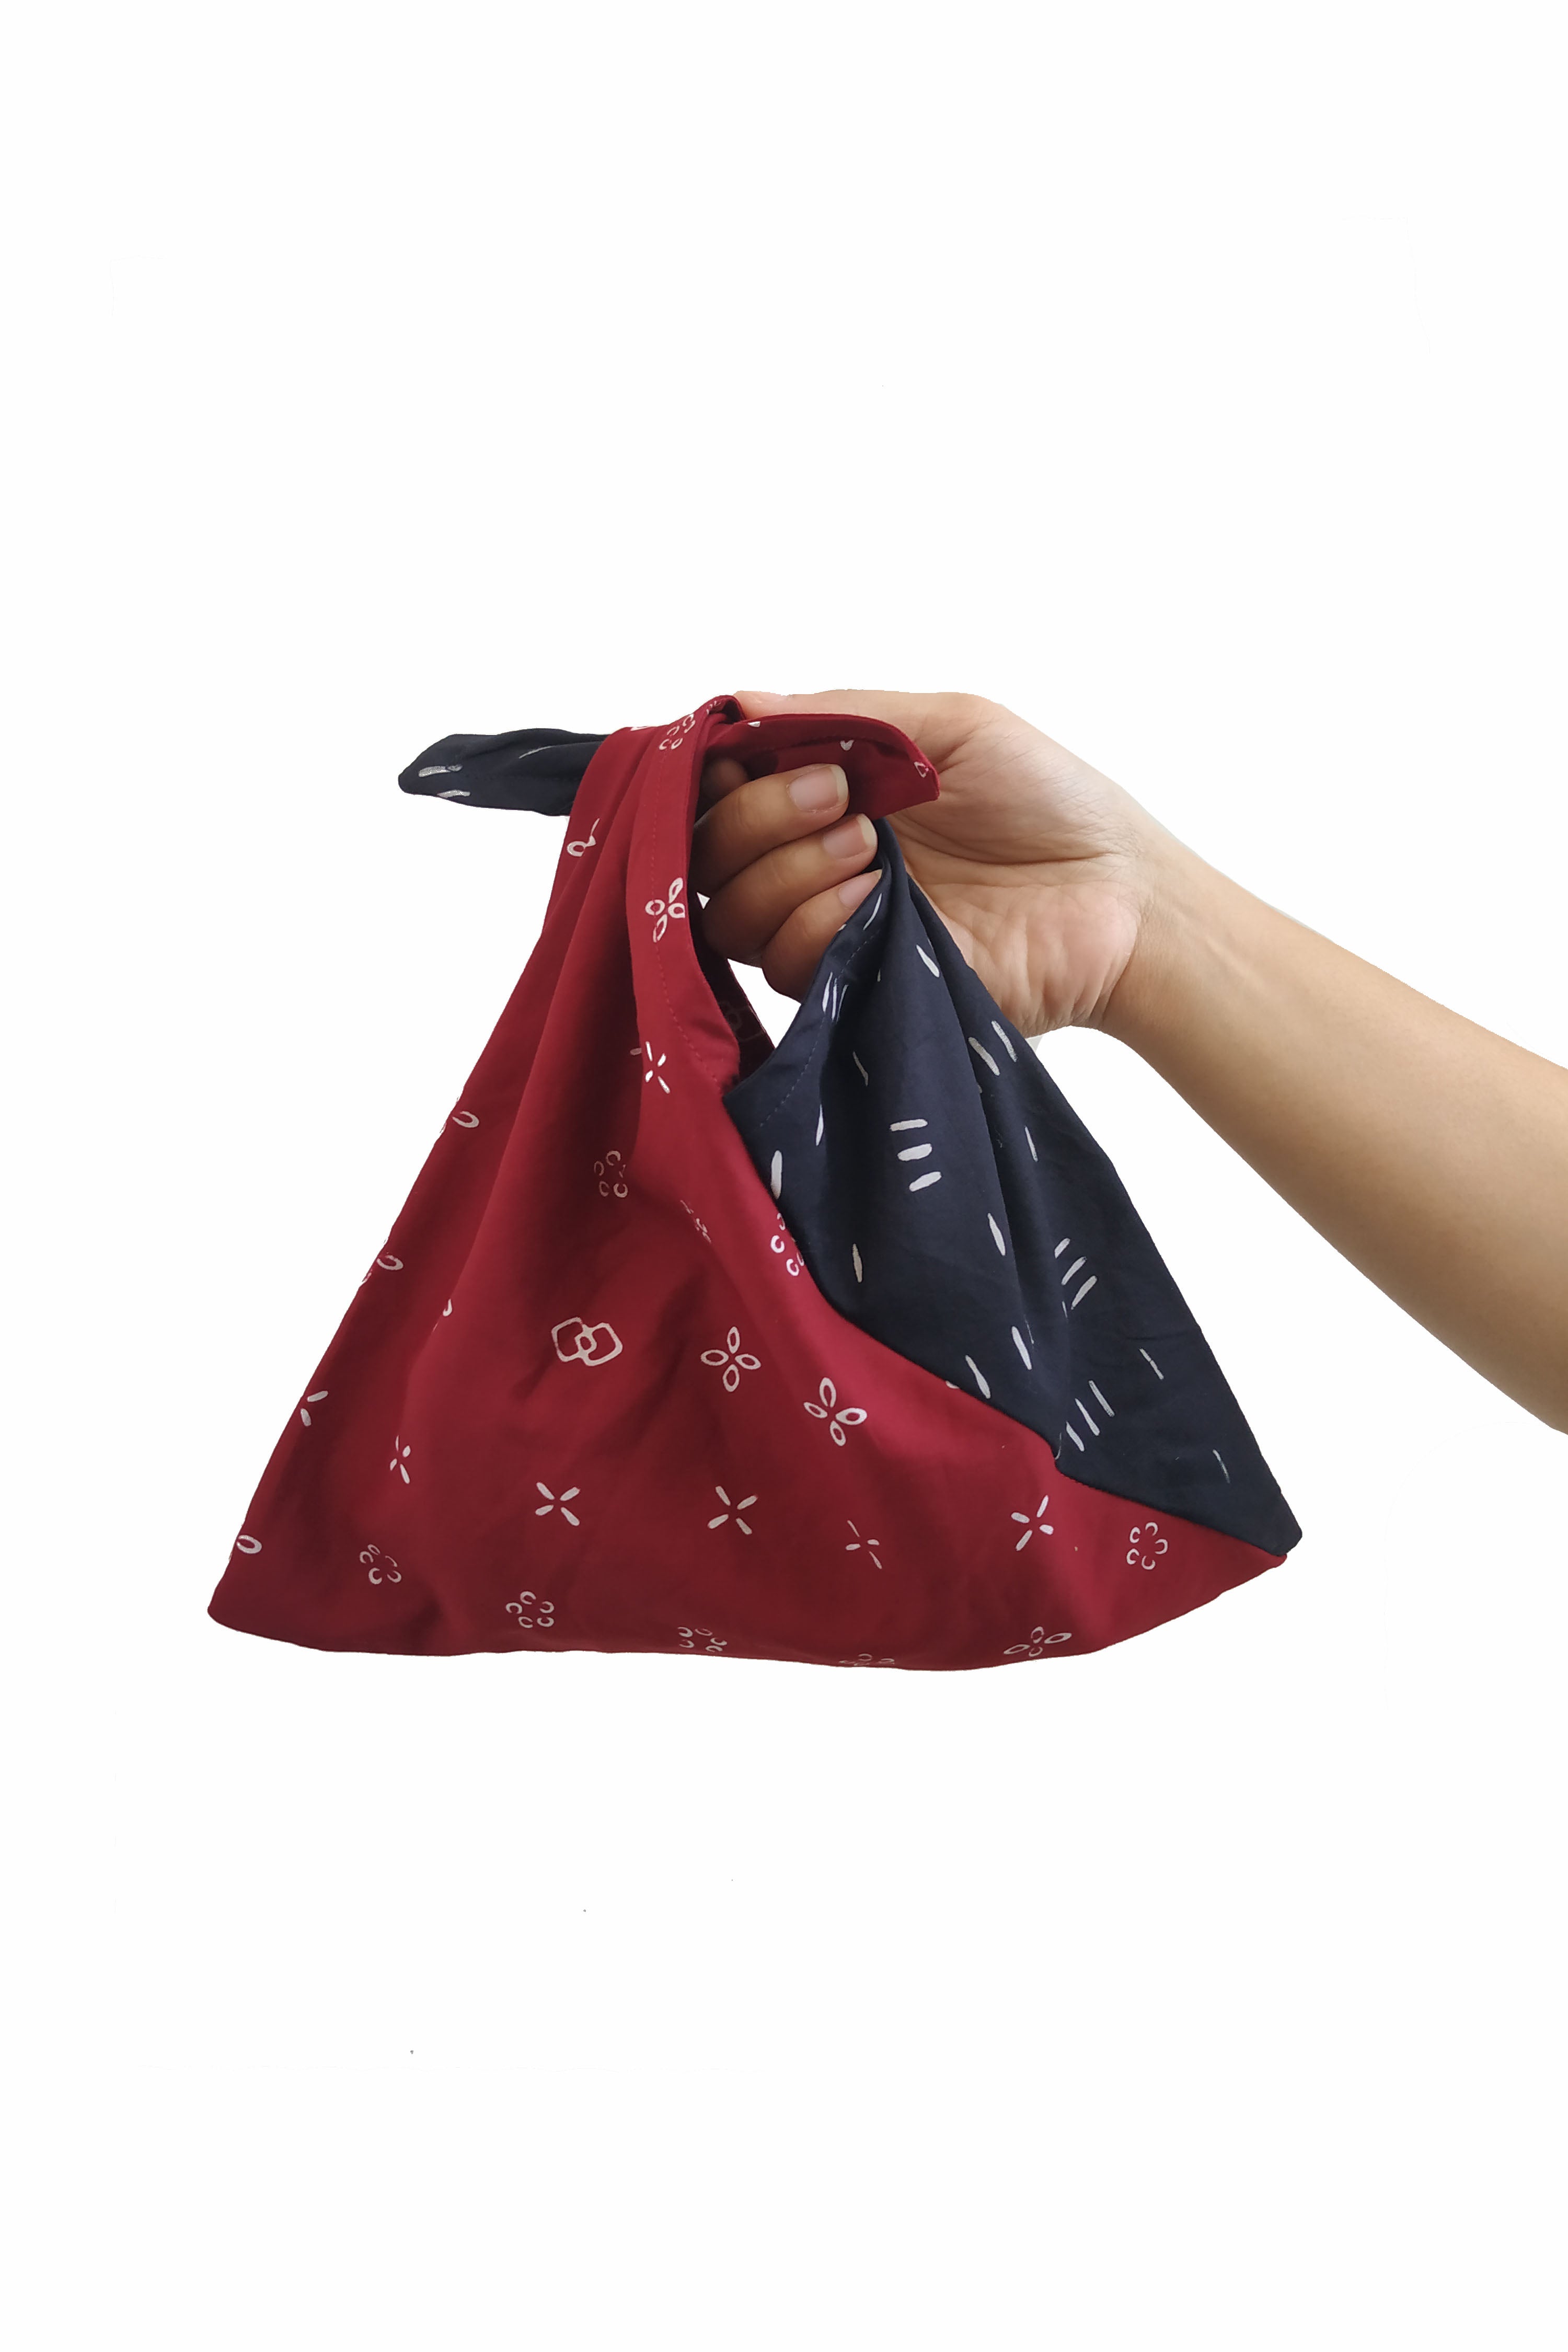 Furoshiki Buntel Bag